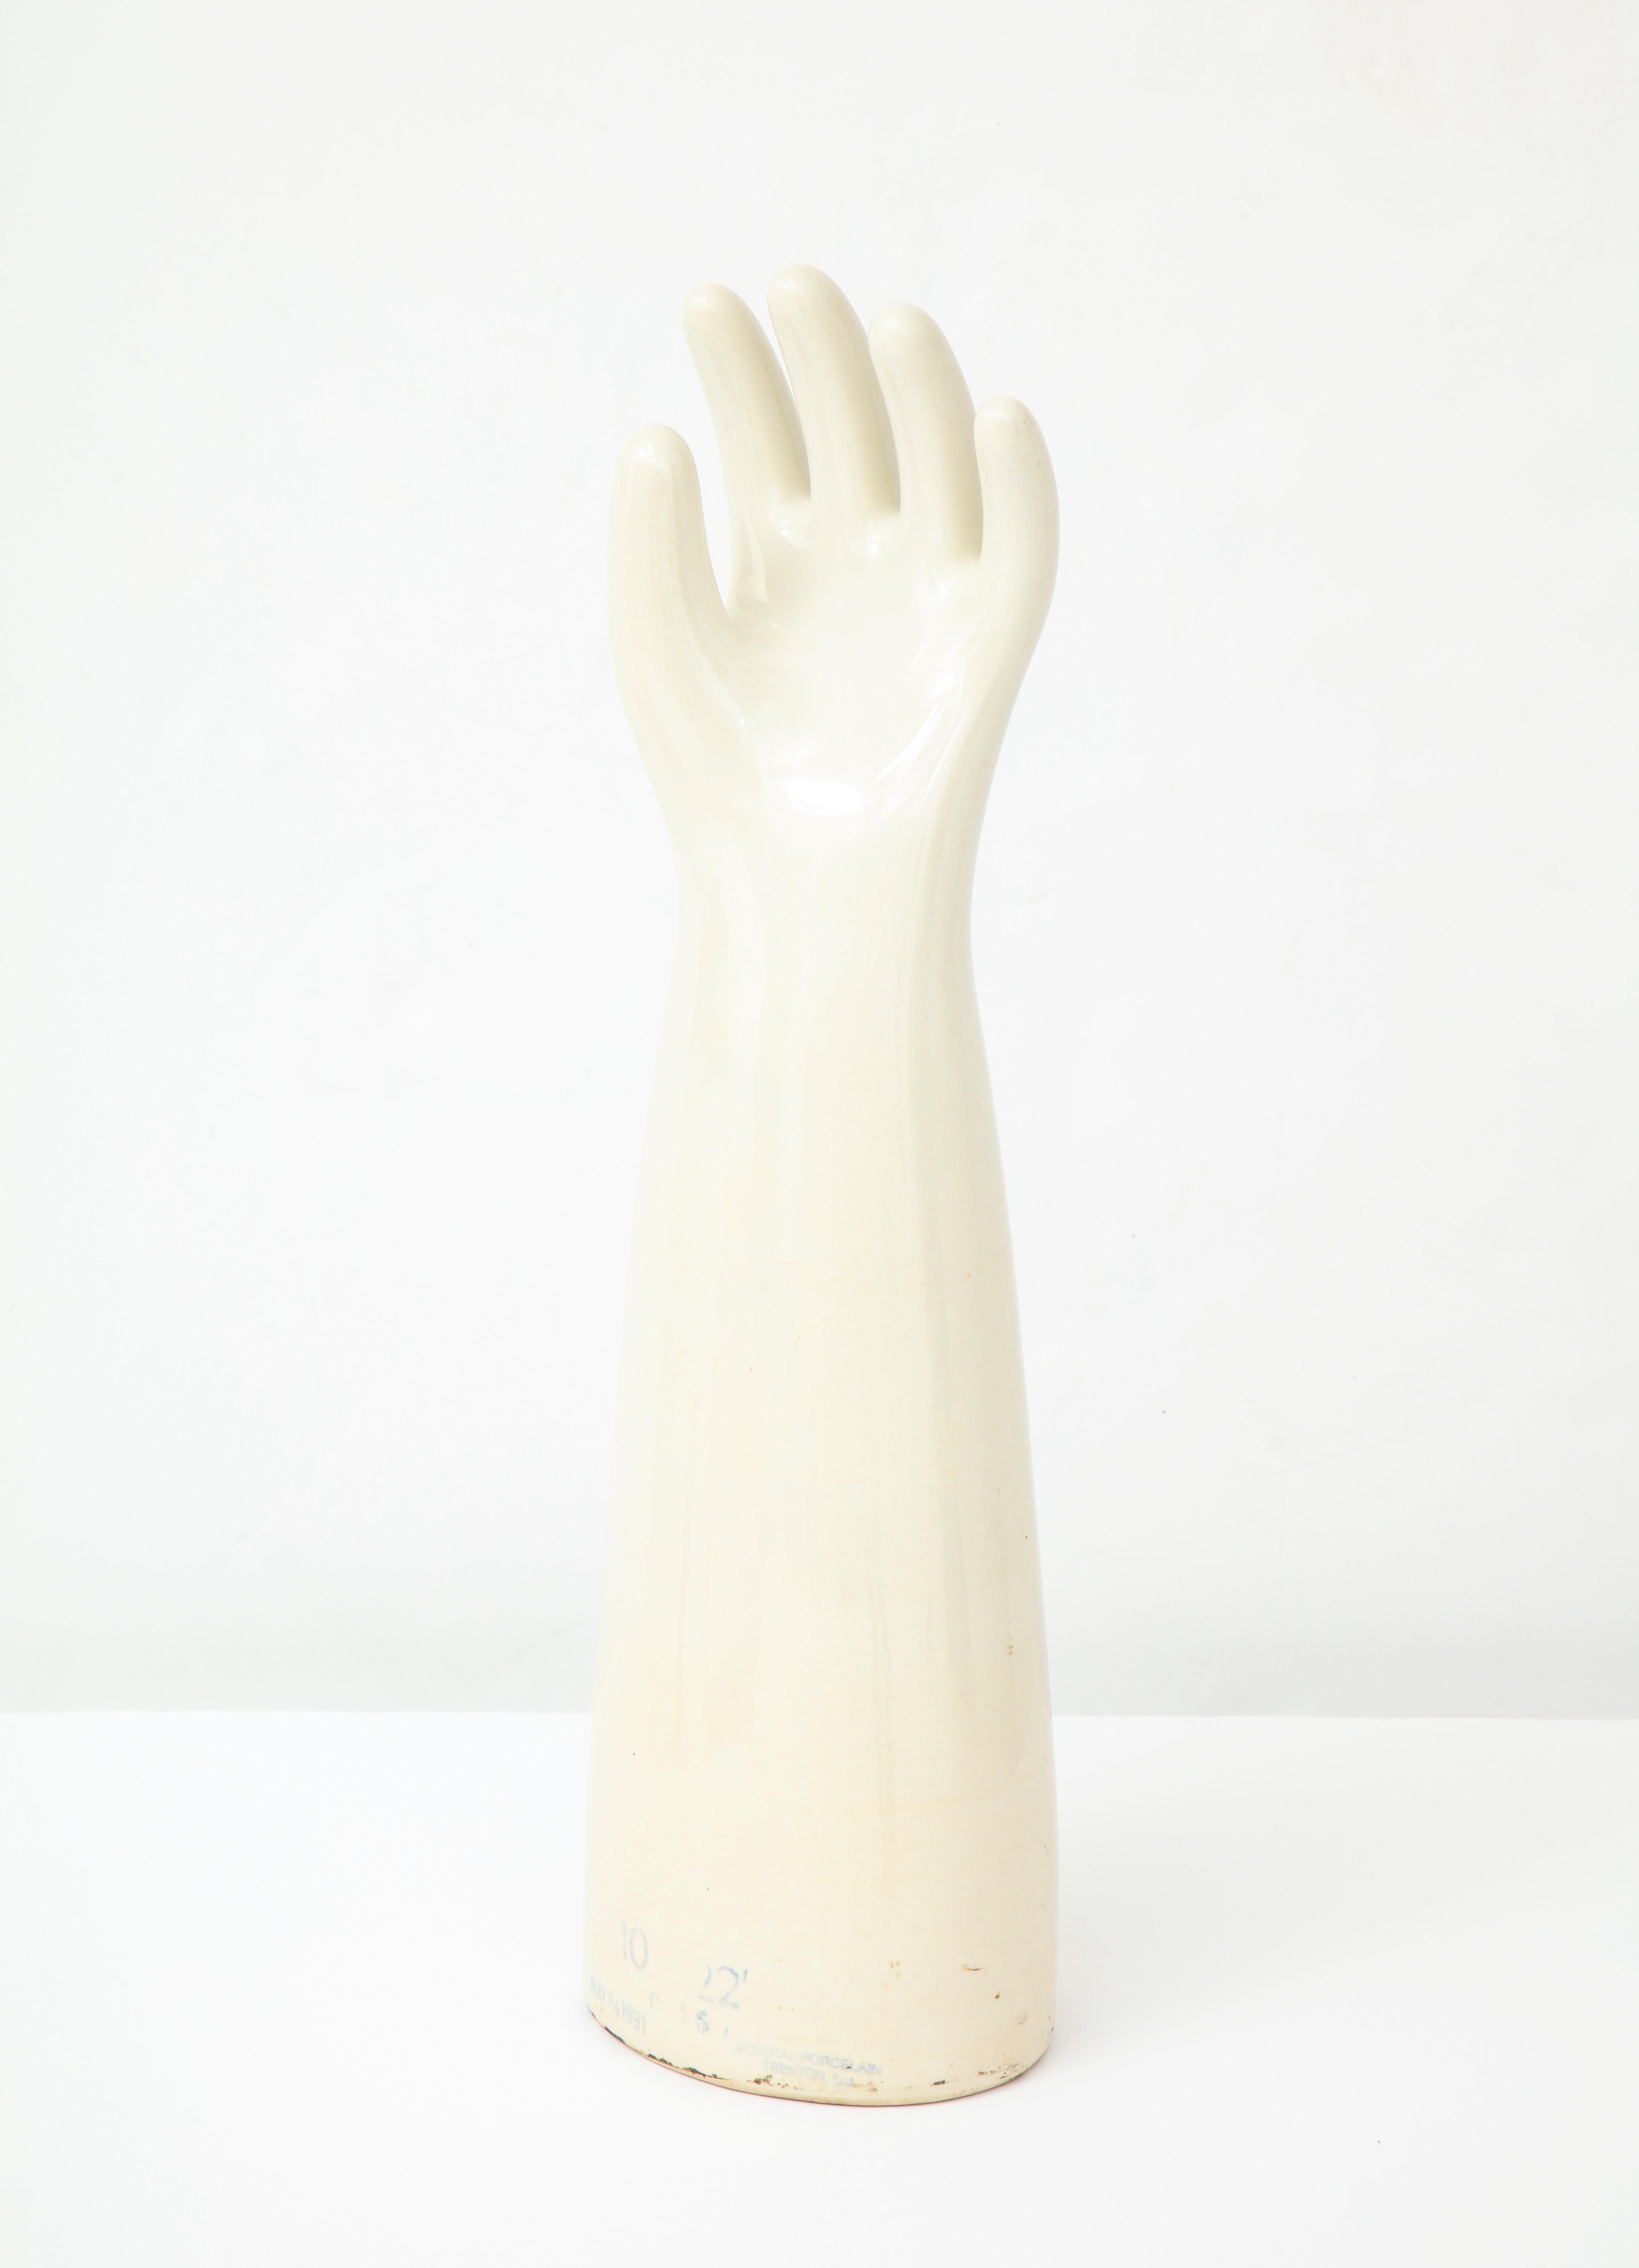 Sculptural bone white porcelain hand latex glove mold.